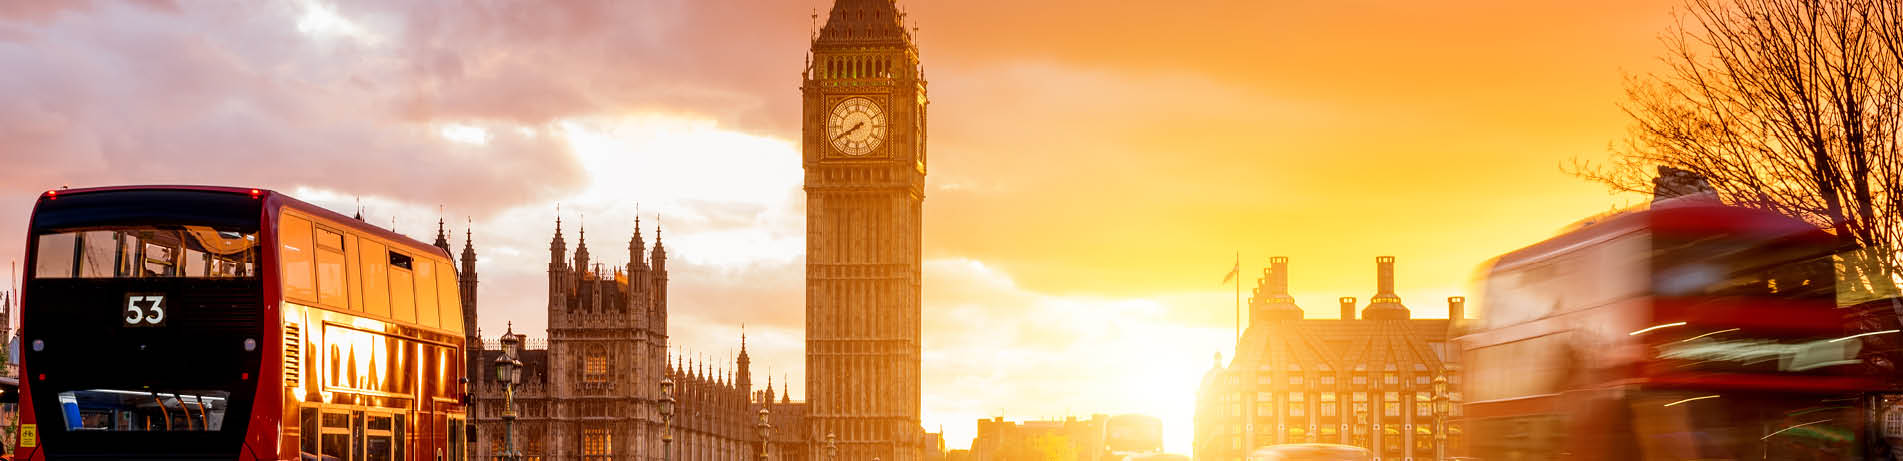 UK parliament at sunset